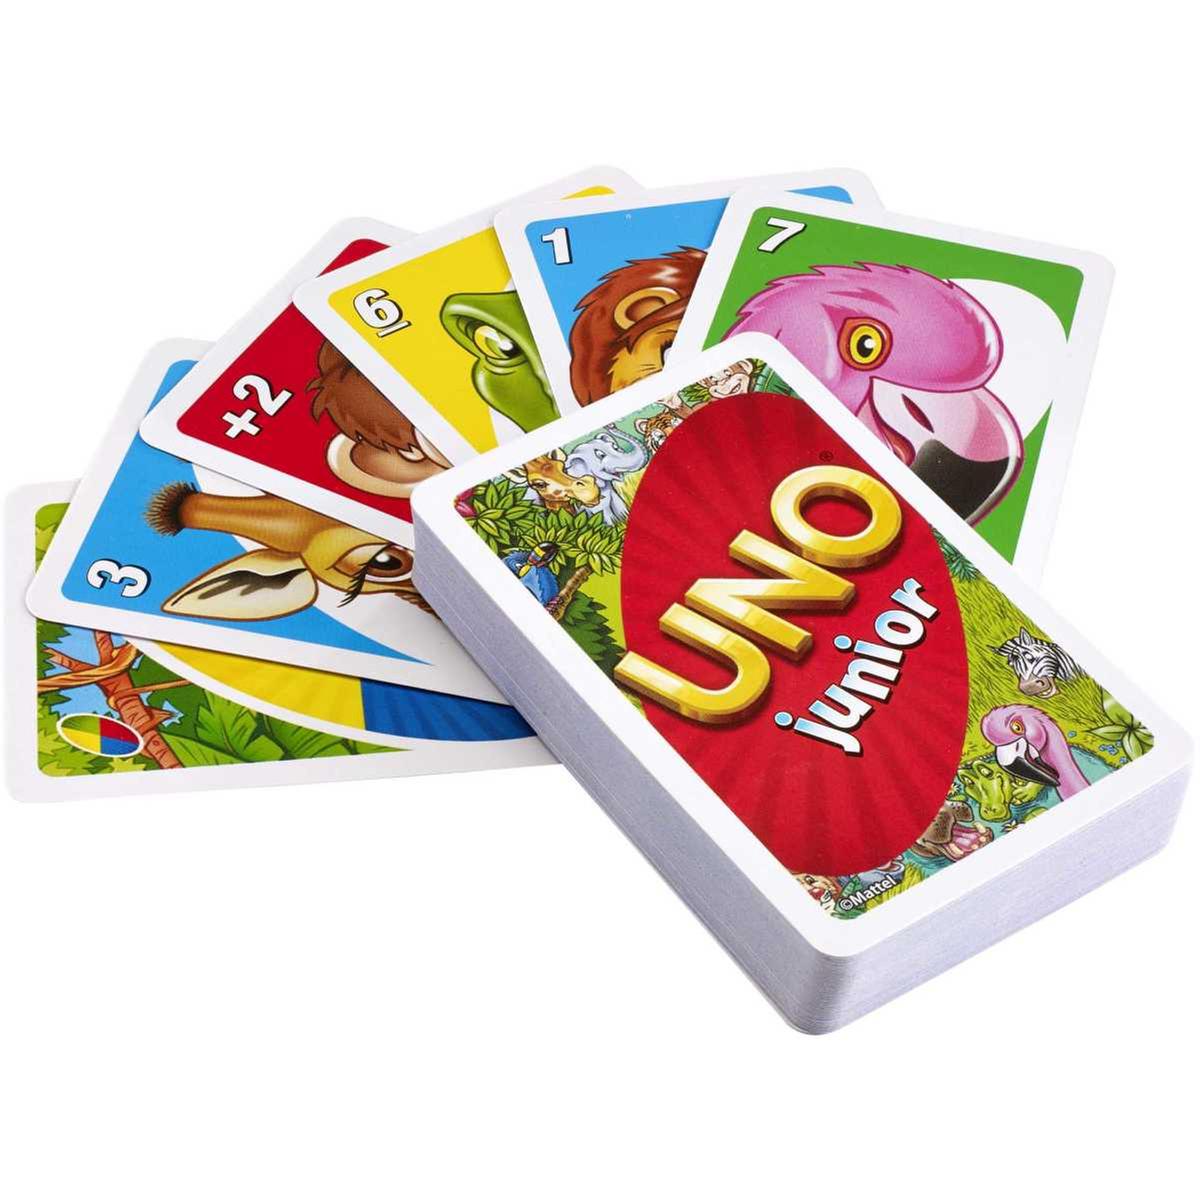 Juego de cartas UNO - Juegos de mesa infantiles